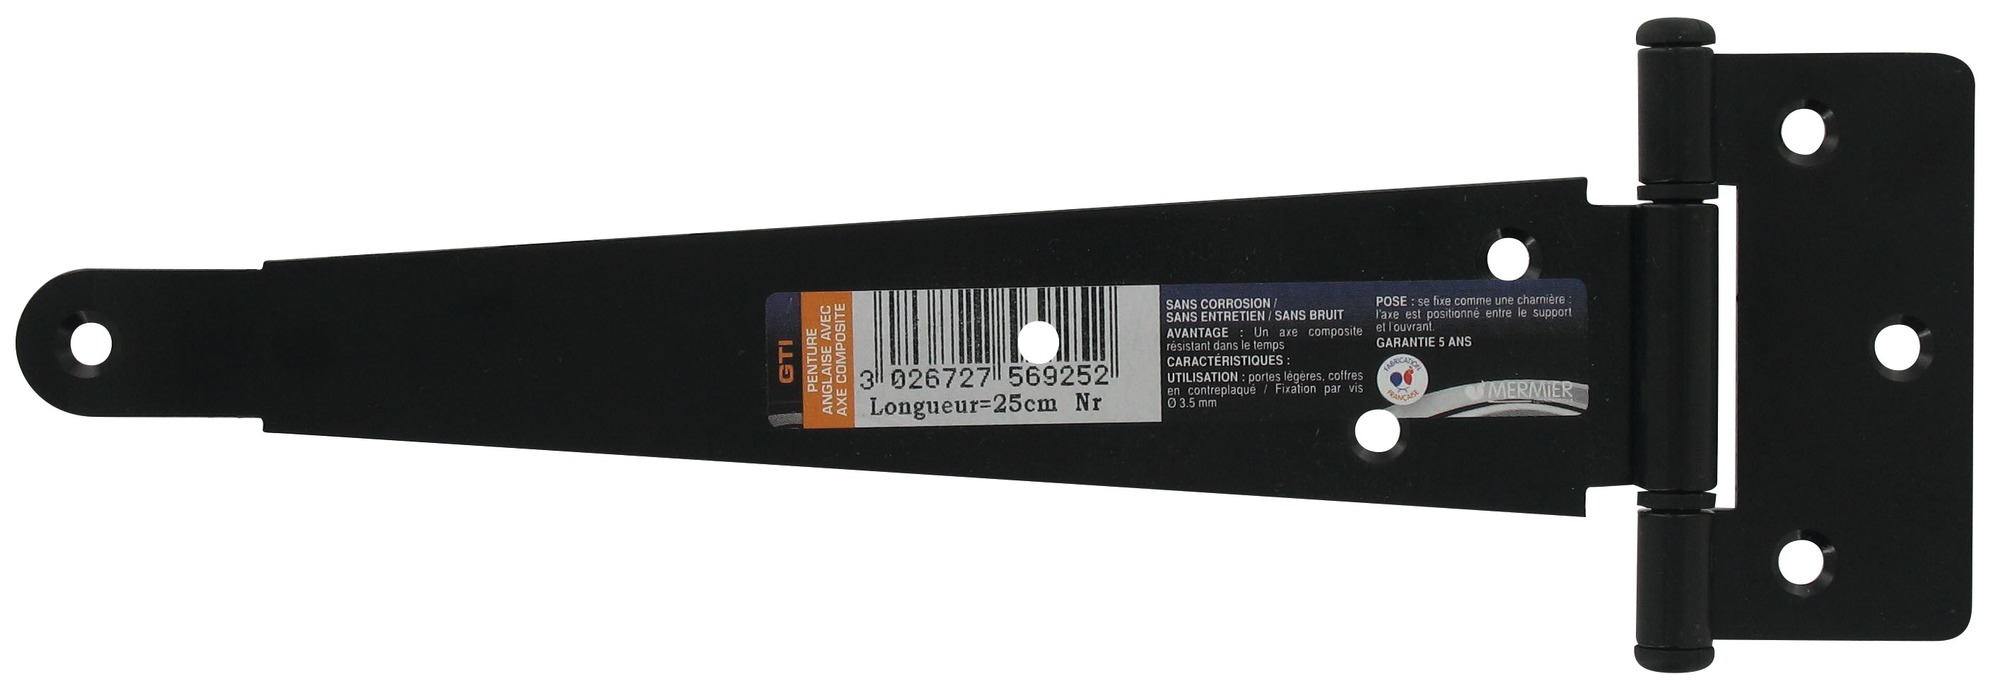 Penture anglaise cataphorèse noire axe composite Mermier Quincaillerie - Longueur 25 cm